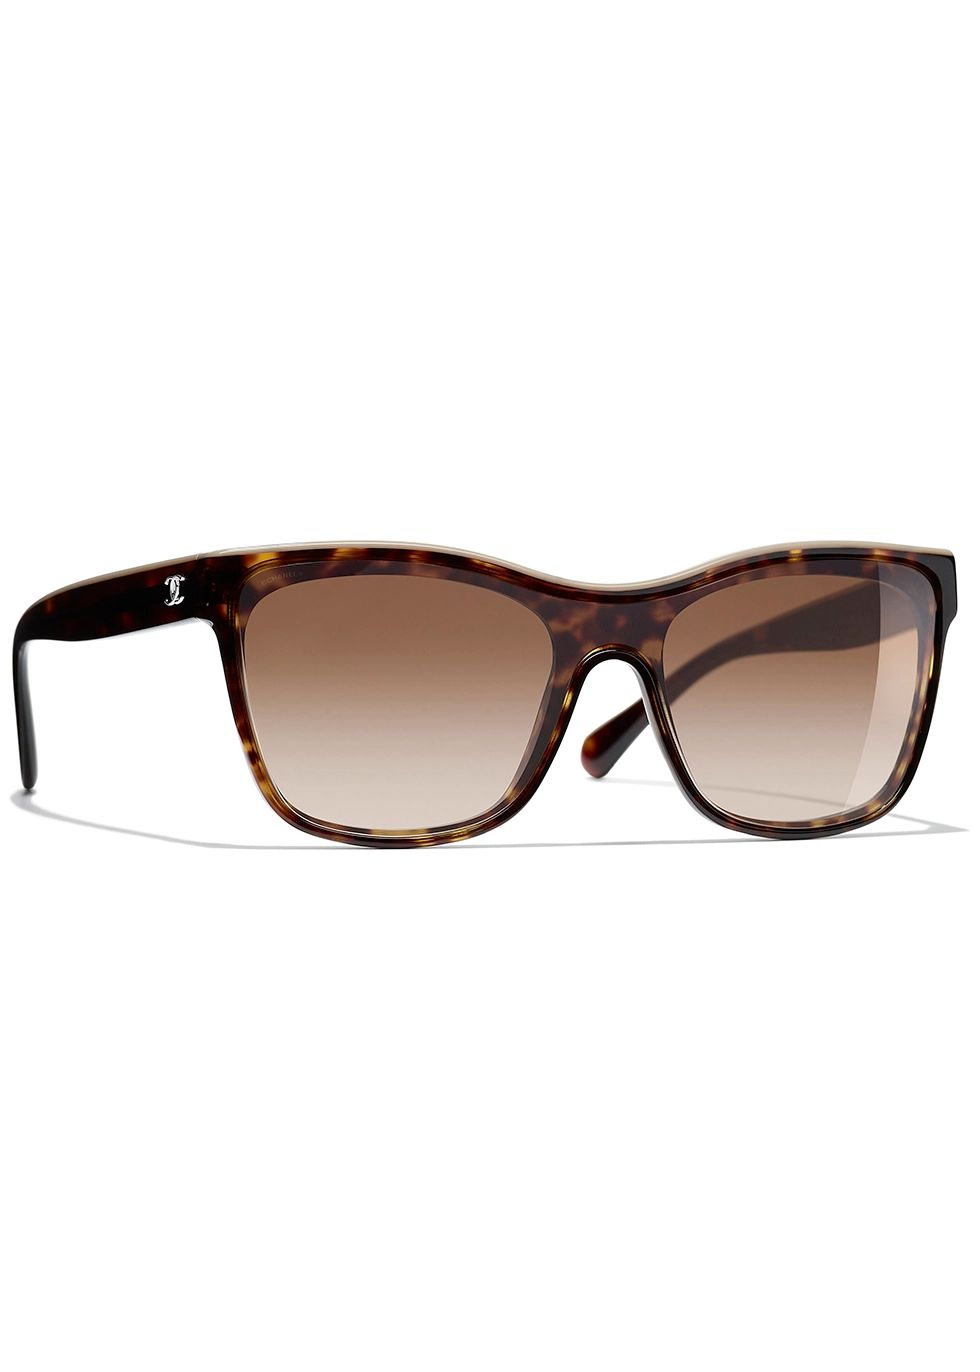 Shield sunglasses | Harvey Nichols (Global)